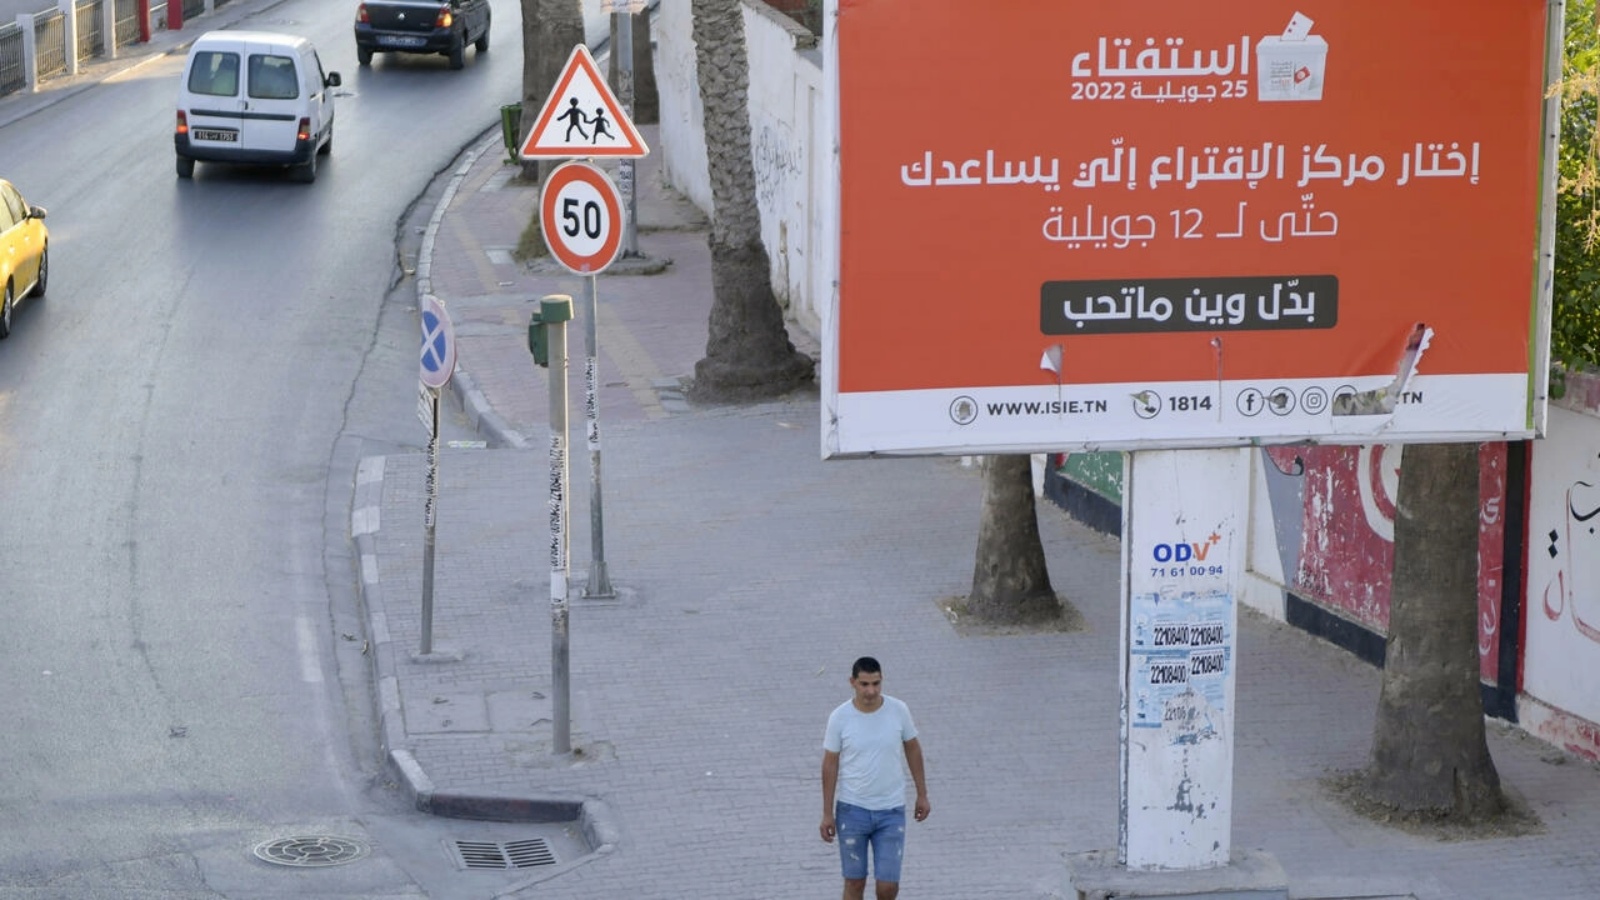 لوحة إعلانية في العاصمة التونسية في 21 يوليو 2022 قبل الاستفتاء